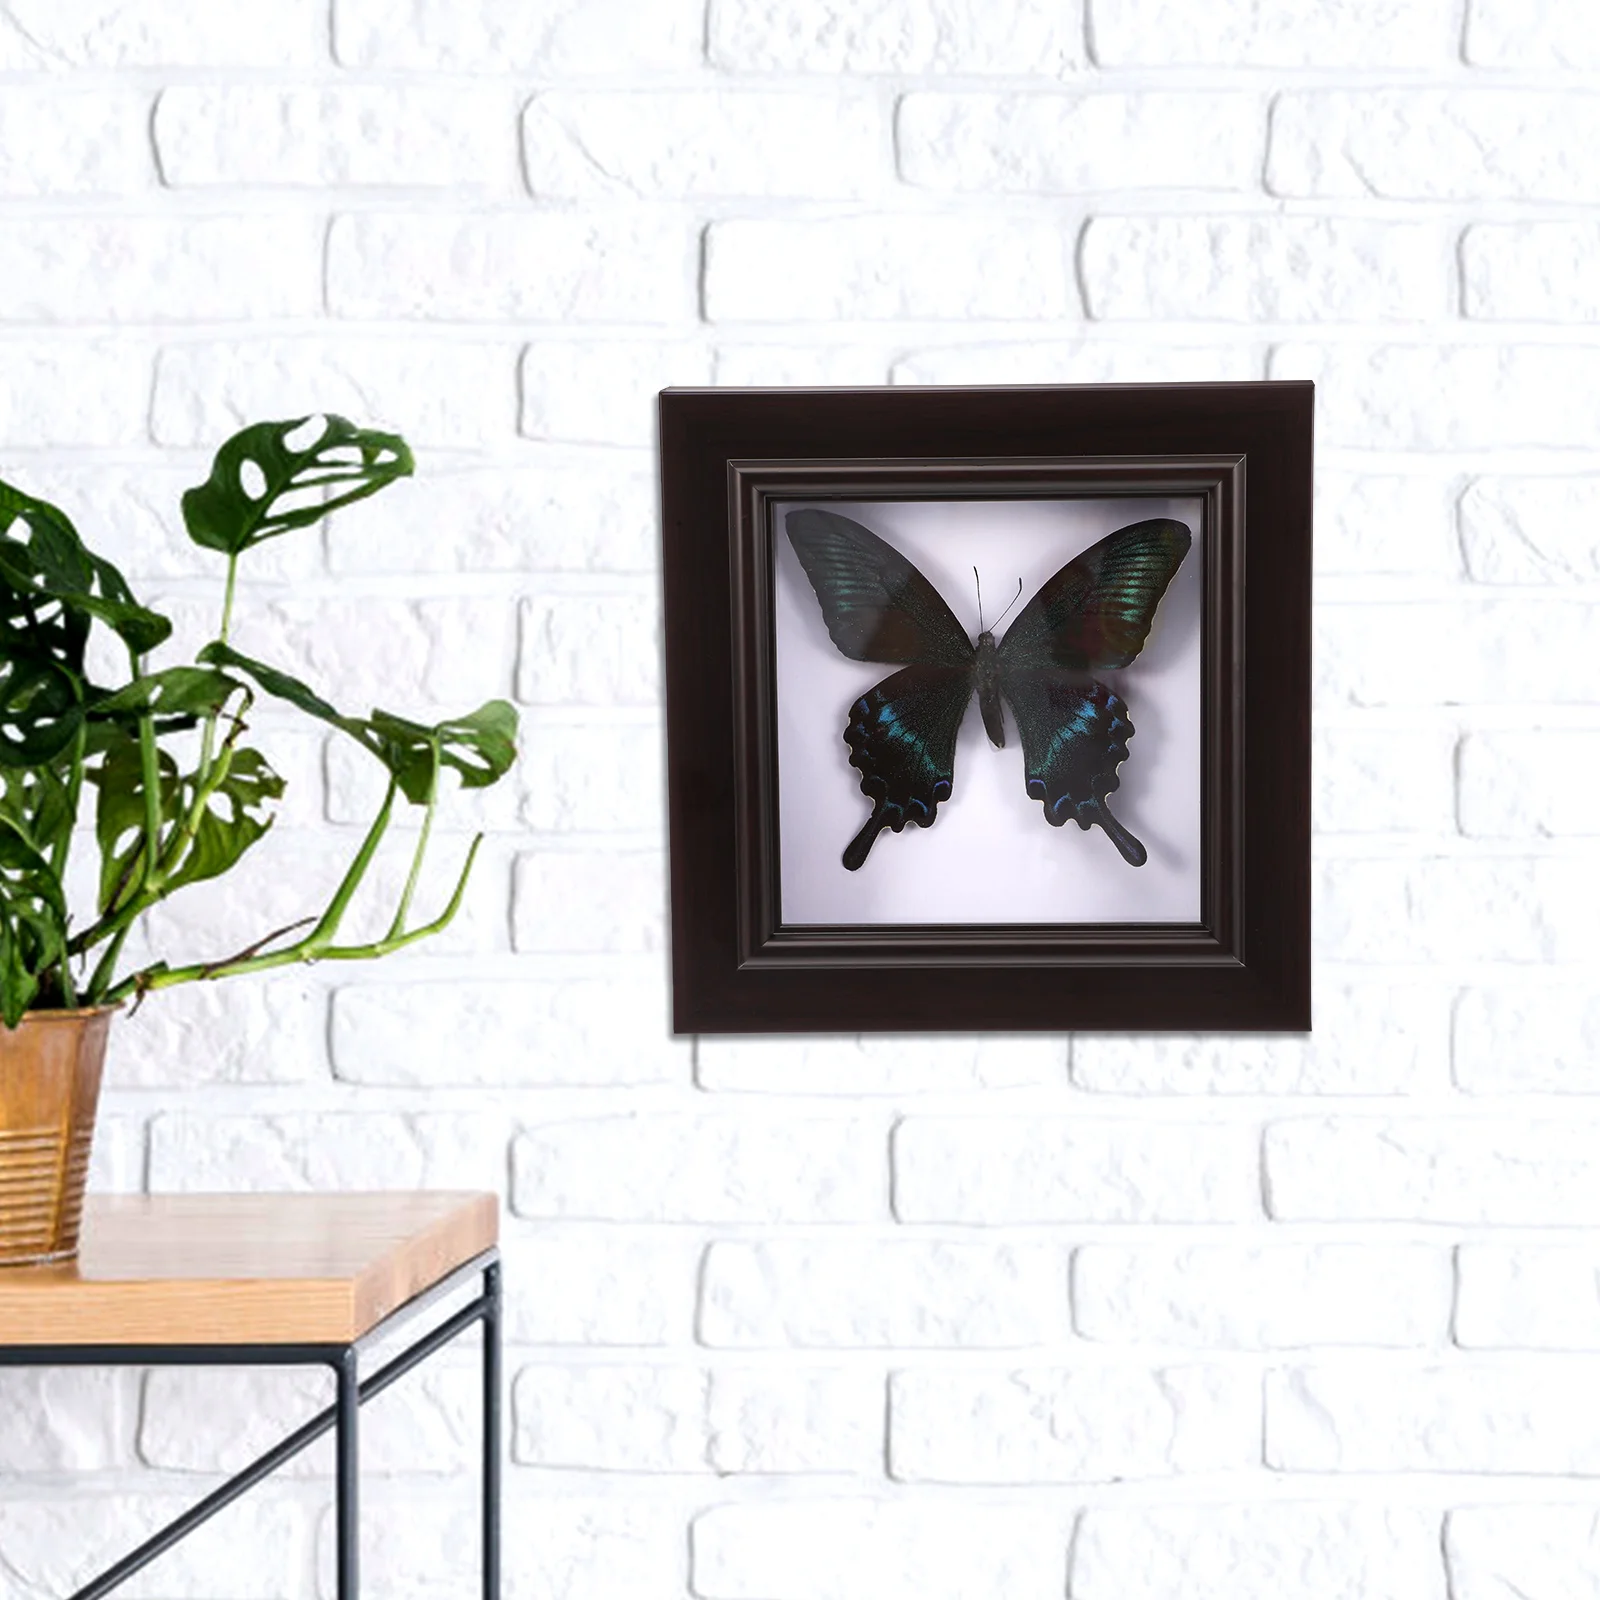 Имитированный образец бабочки Ручной работы, редкие и изысканные образцы декора, висящий на стене Образец для коллекции Education Rese